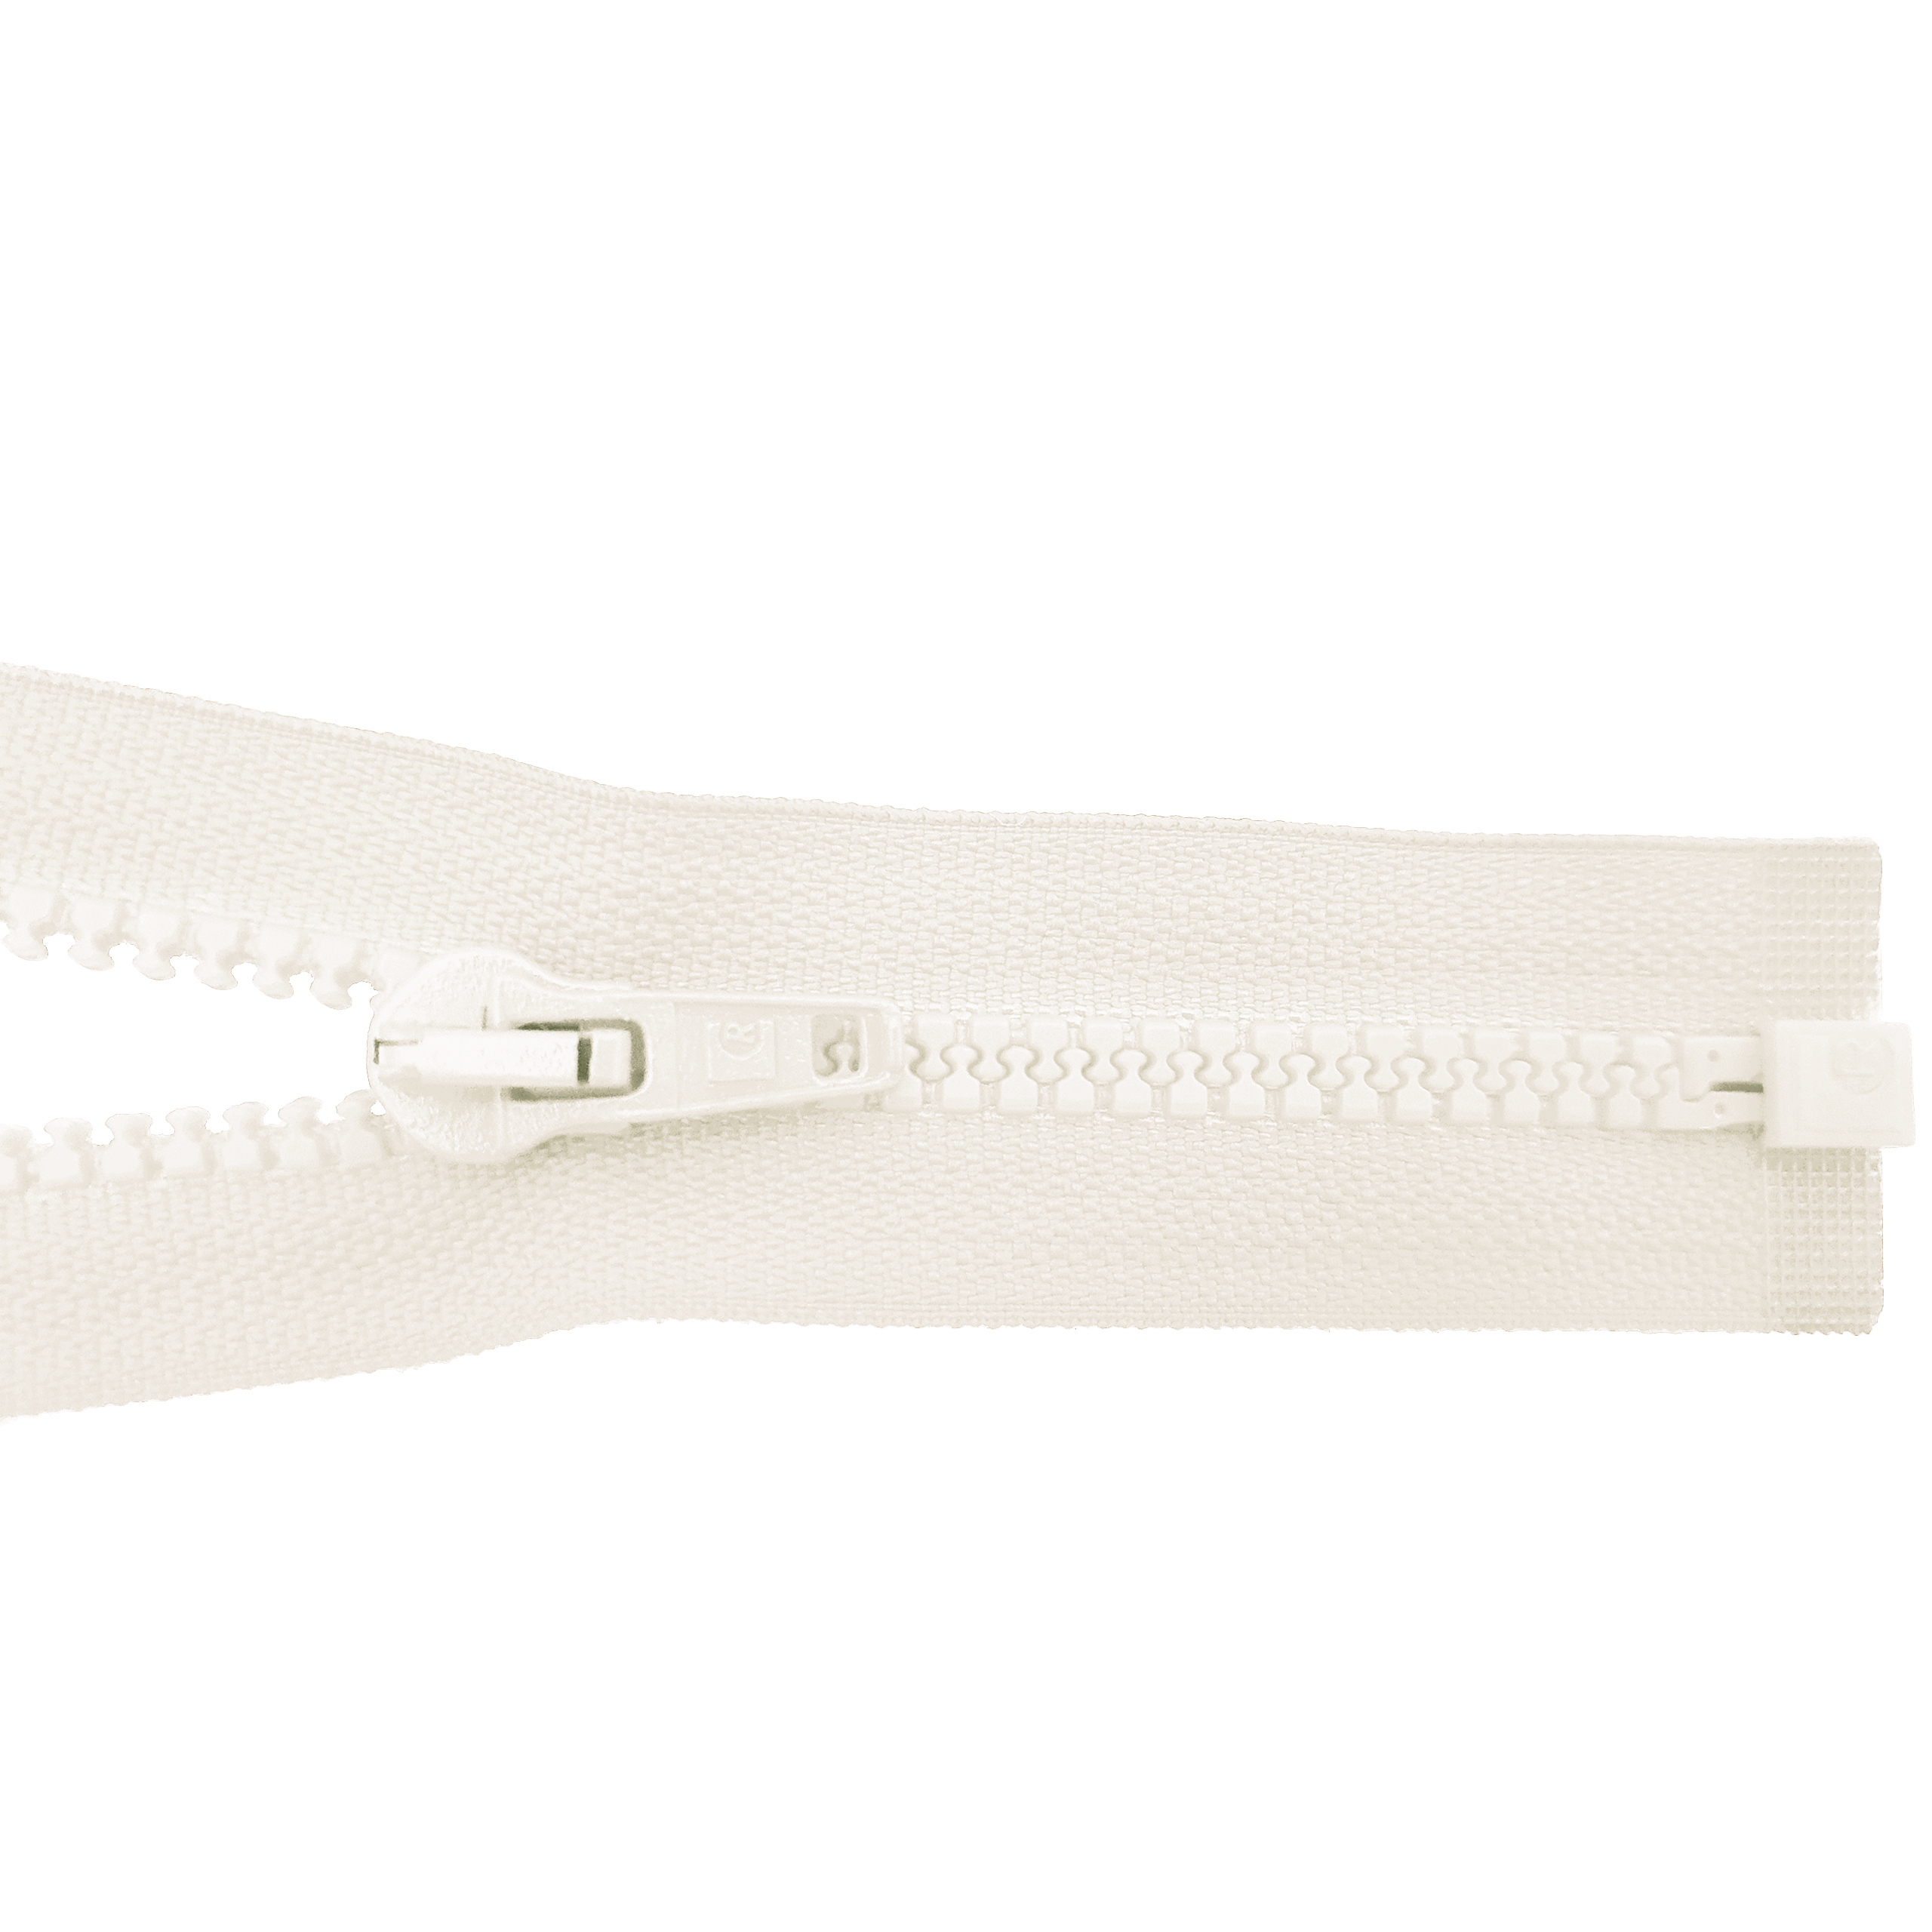 Reißverschluss 80cm, teilbar, Kstoff Zähne breit, rohweiß, hochwertiger Marken-Reißverschluss von Rubi/Barcelona